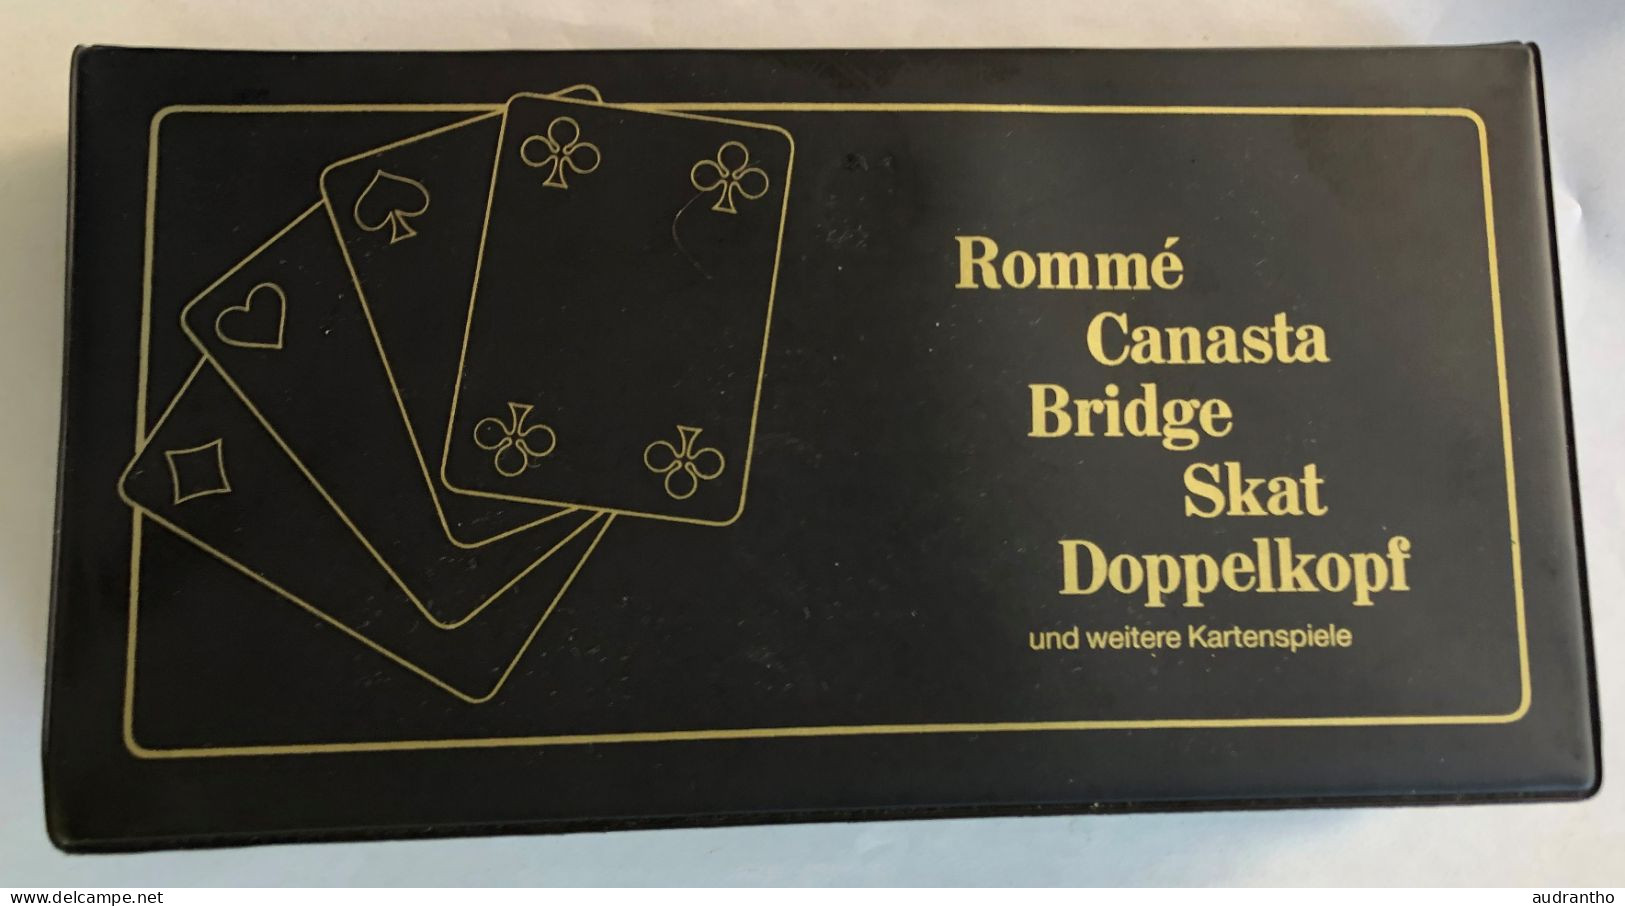 Coffret De 3 Jeux De Cartes Rommé Canasta Bridge Skat Doppelkopf - Kartenspiele - Berliner Spielkarten - 54 Cartes